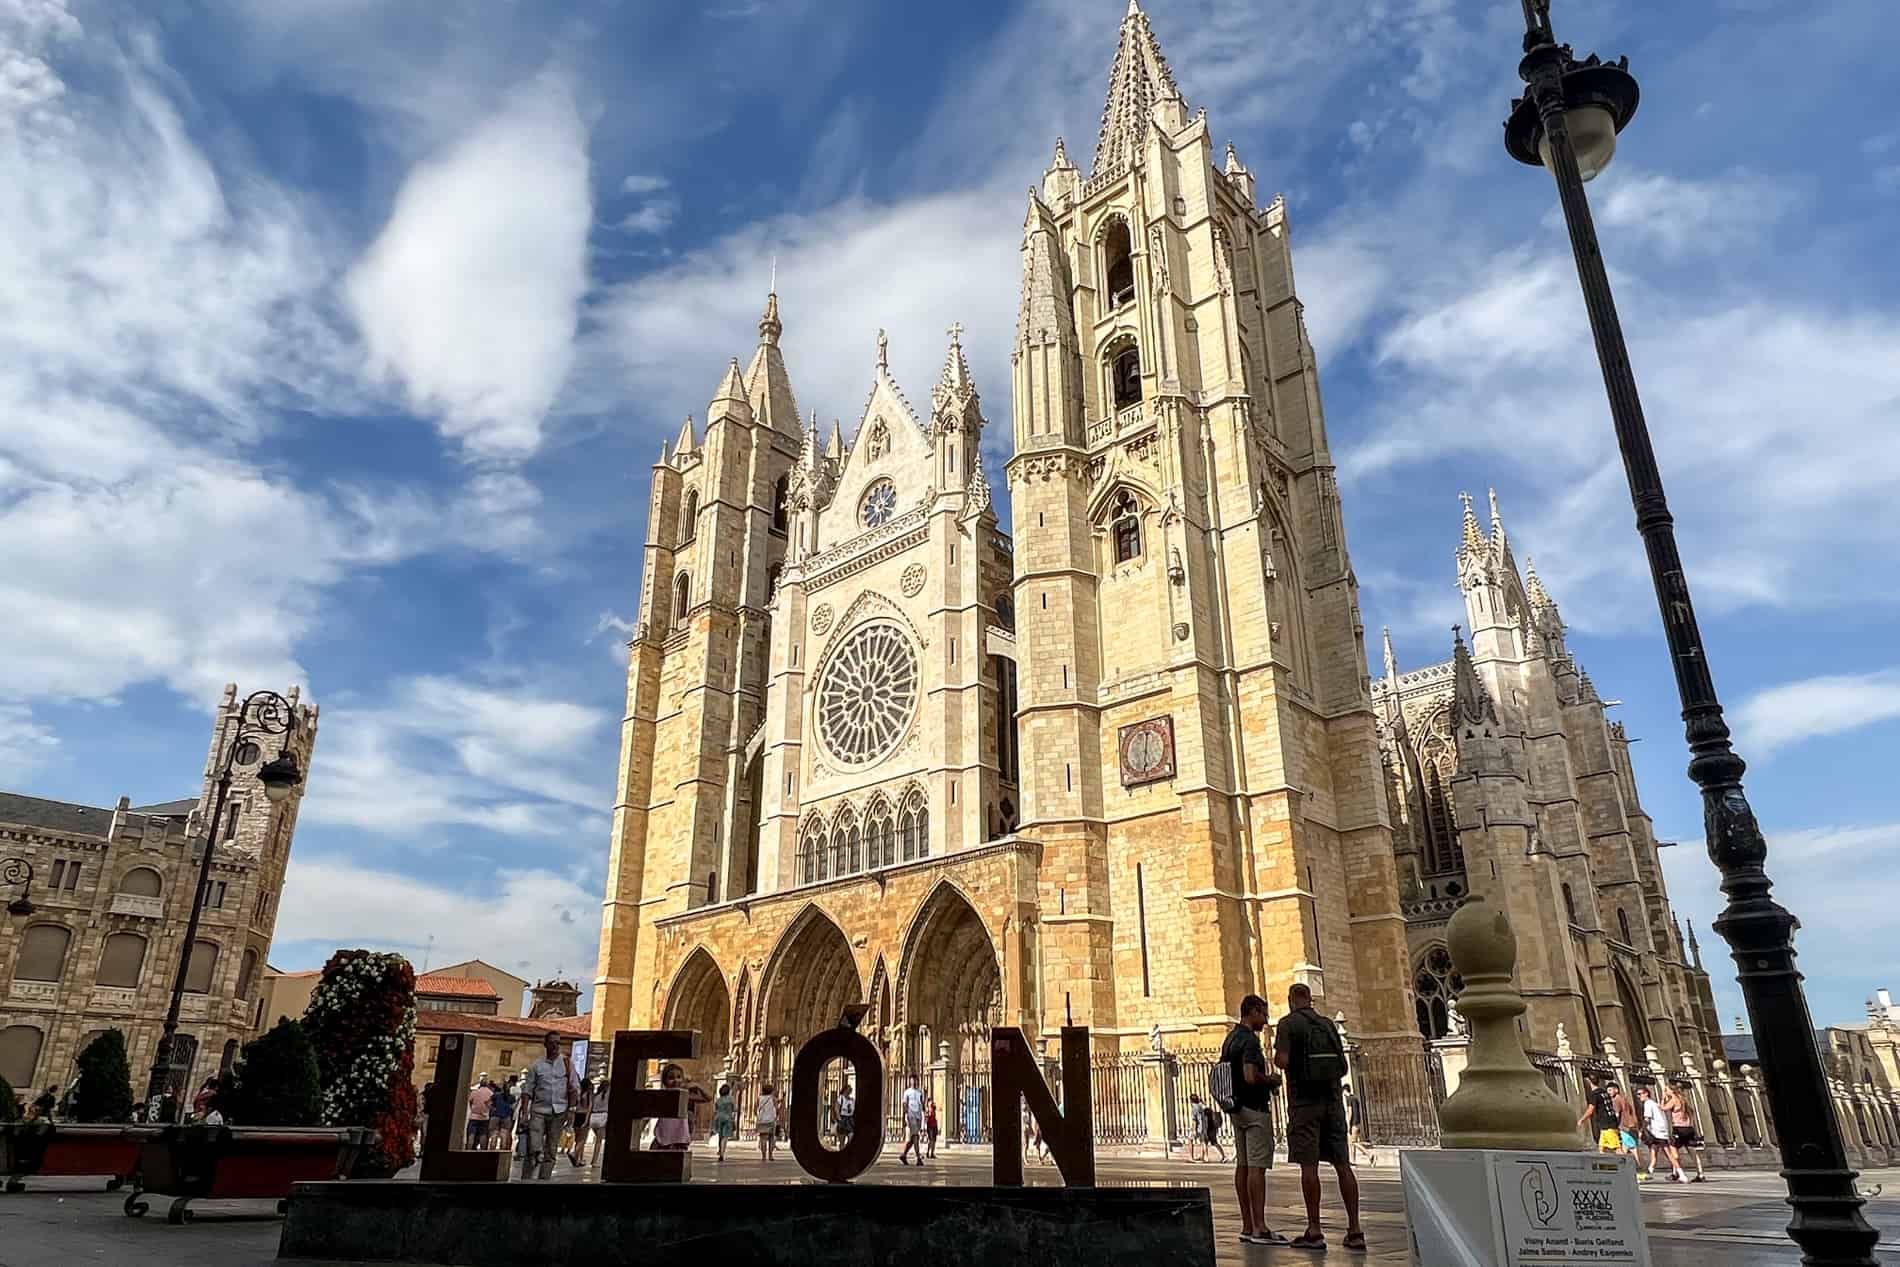 Un letrero de bronce de León en la plaza frente a la magnífica estructura gótica dorada de la Catedral de León.